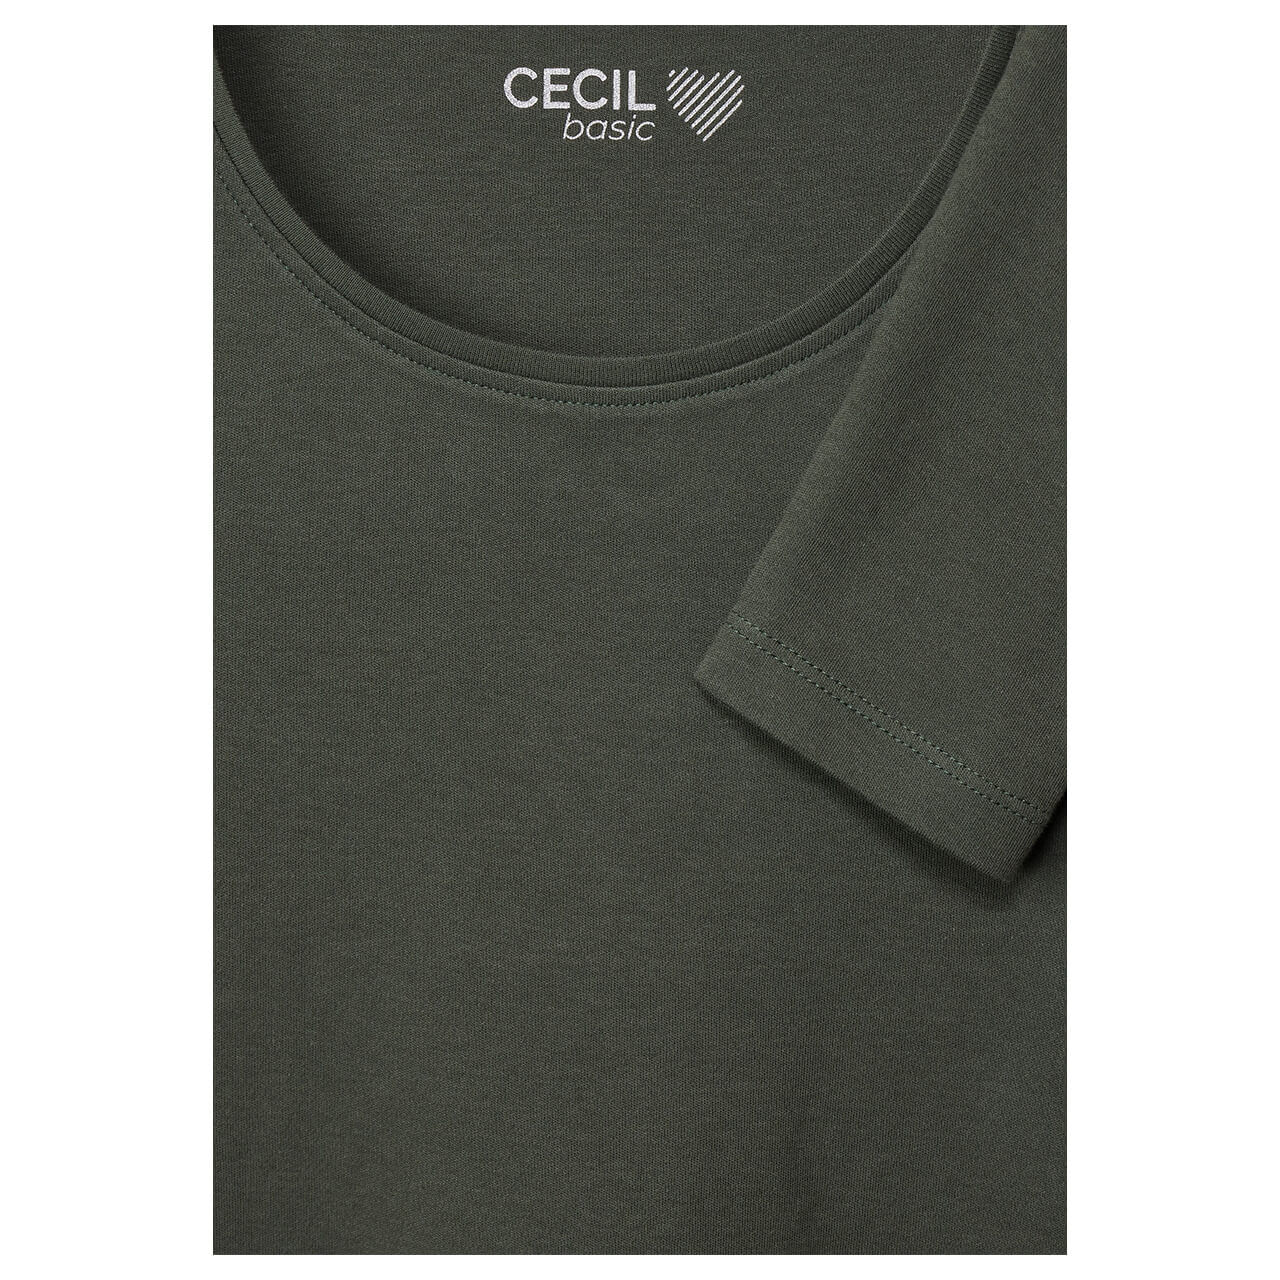 Cecil Damen Langarm Shirt Pia dynamic khaki